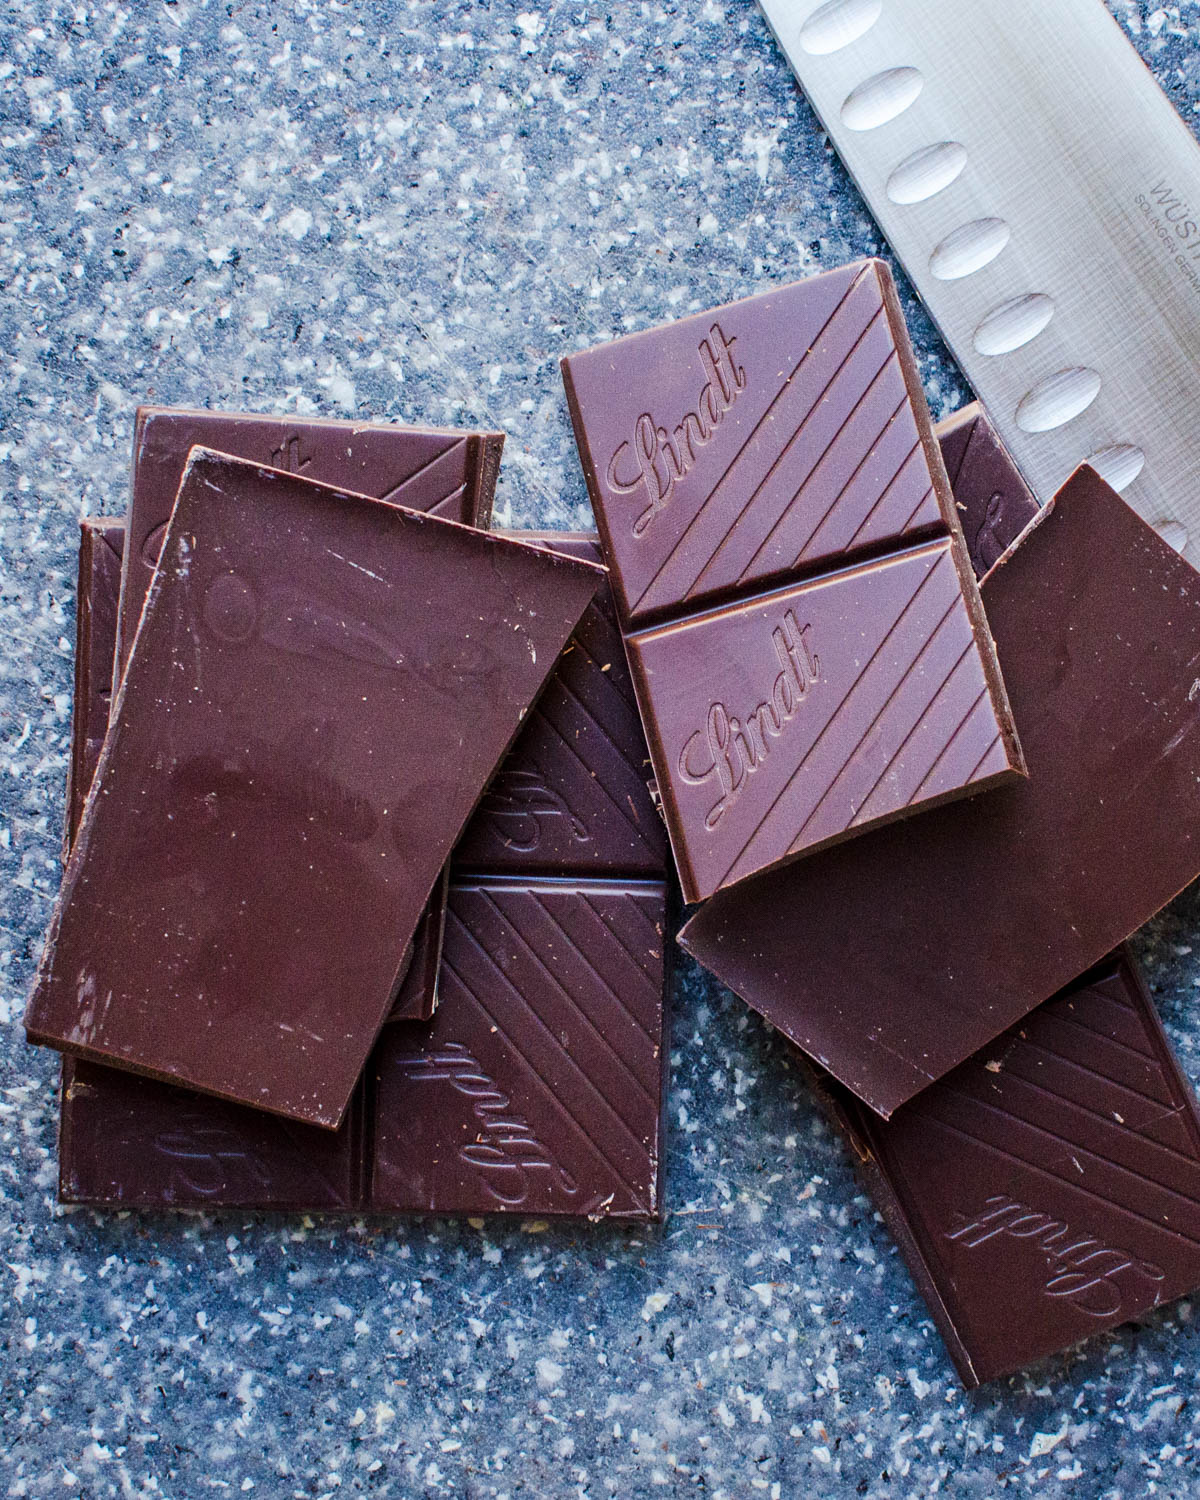 Dark chocolate bars of chocolate.